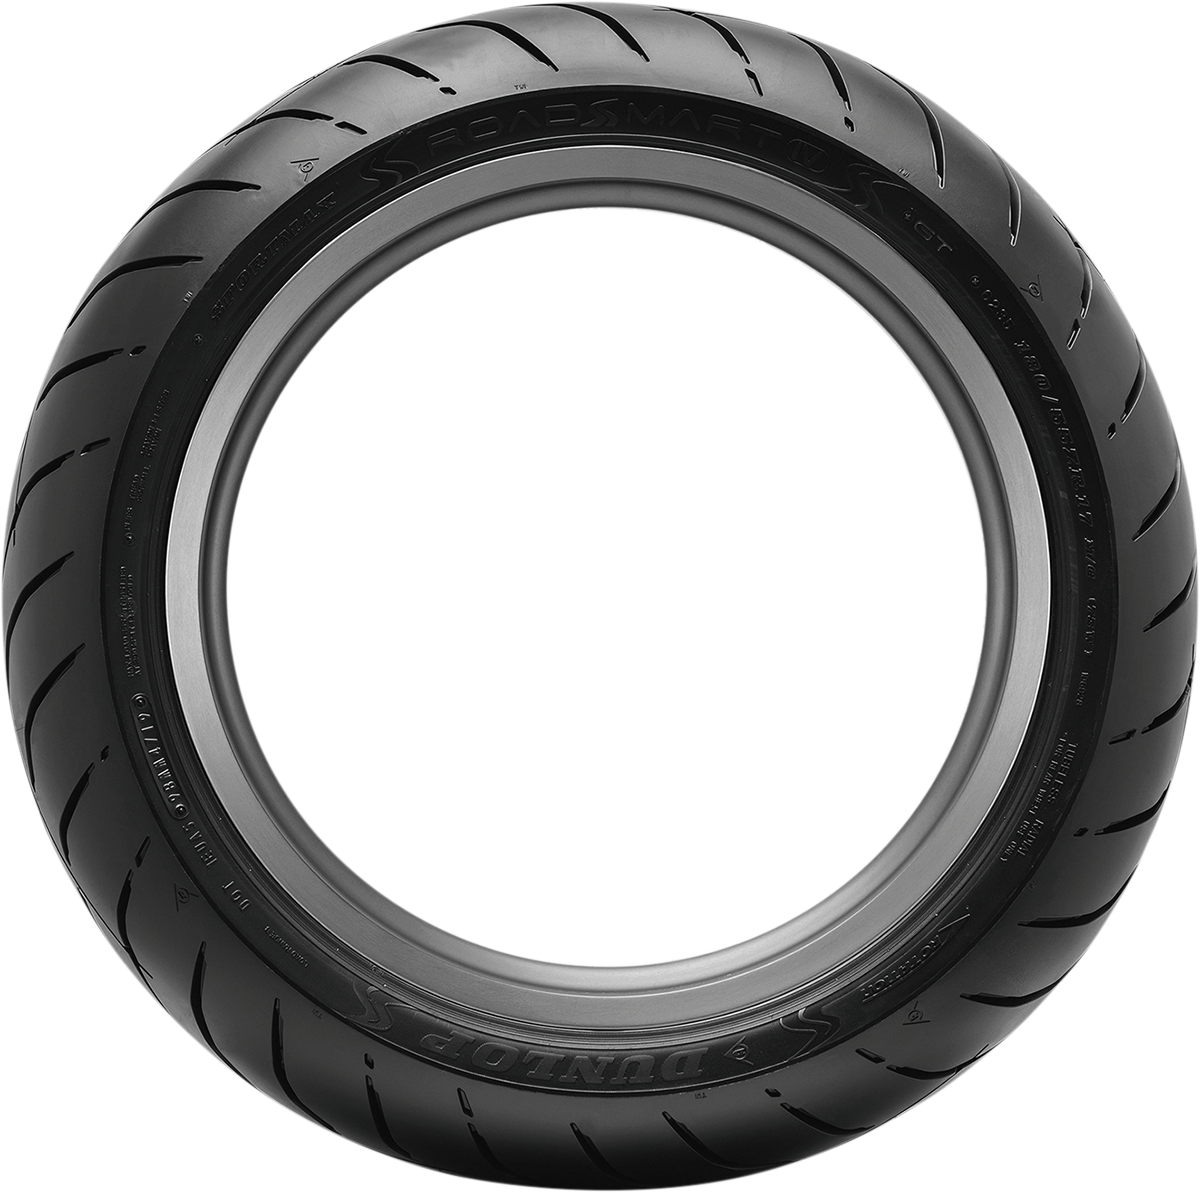 DUNLOP Tire - Sportmax® Roadsmart IV - Rear - 180/55ZR17 - (73W) 45253304